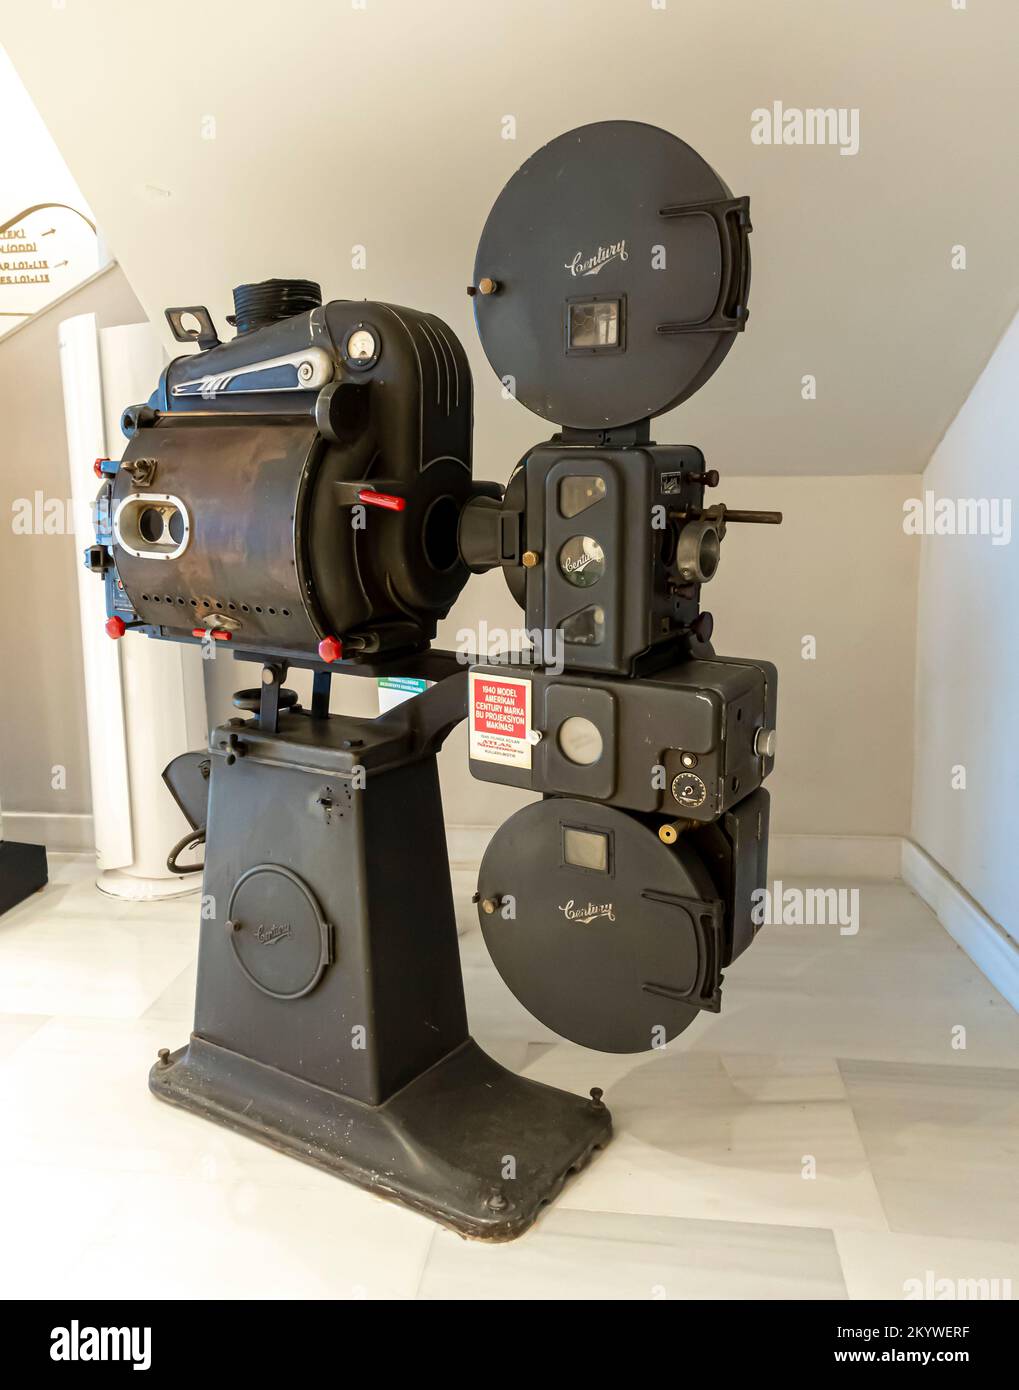 Proyector de cine de 35mm fotografías e imágenes de alta resolución - Alamy